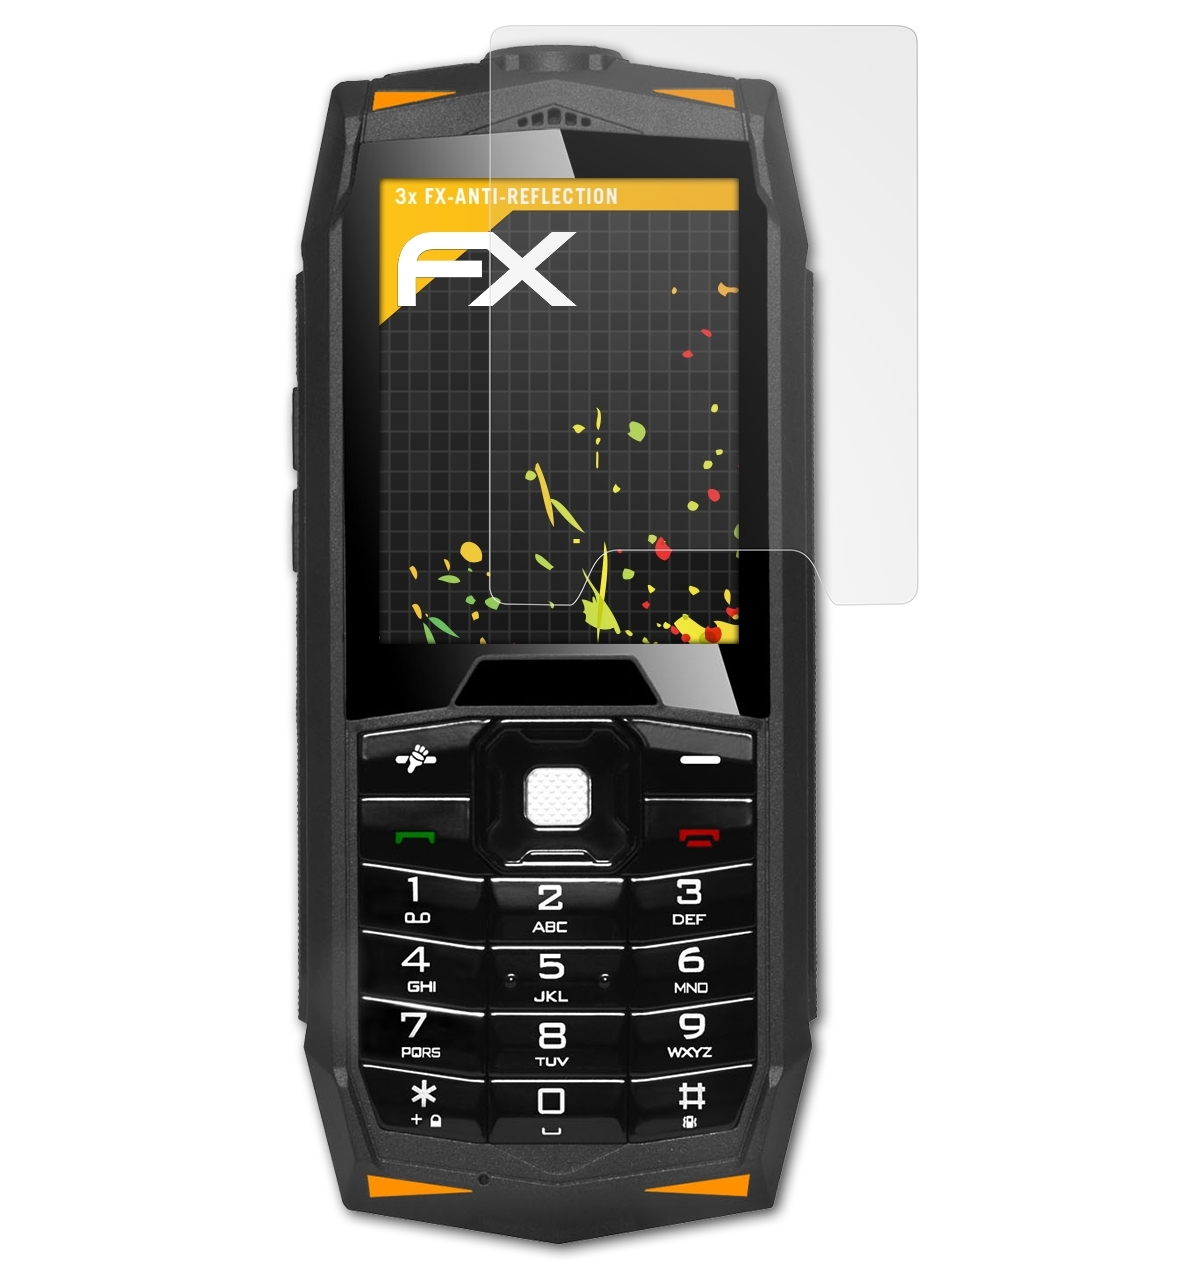 FX-Antireflex Displayschutz(für ATFOLIX 3x StrongPhone Evolveo Z3)